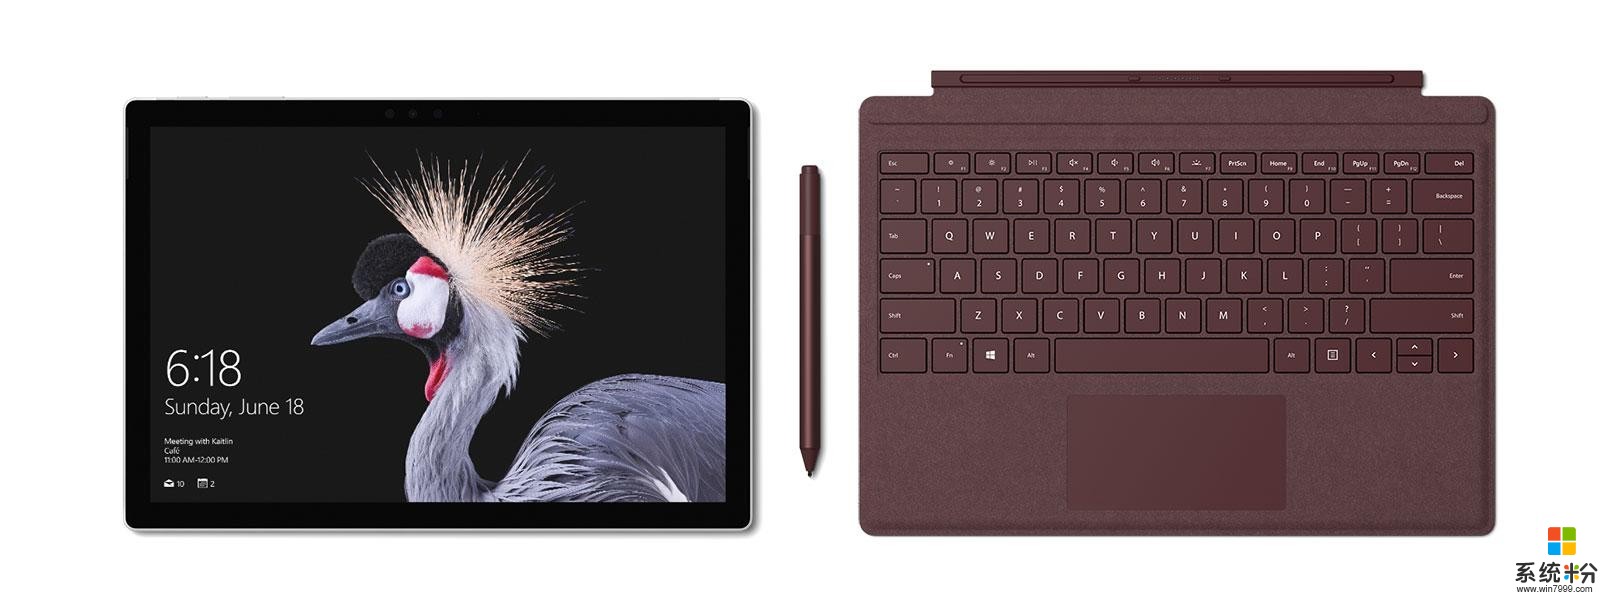 微软发布全新Surface Pro: 入门版仅5888元 配4096级别压感笔(1)